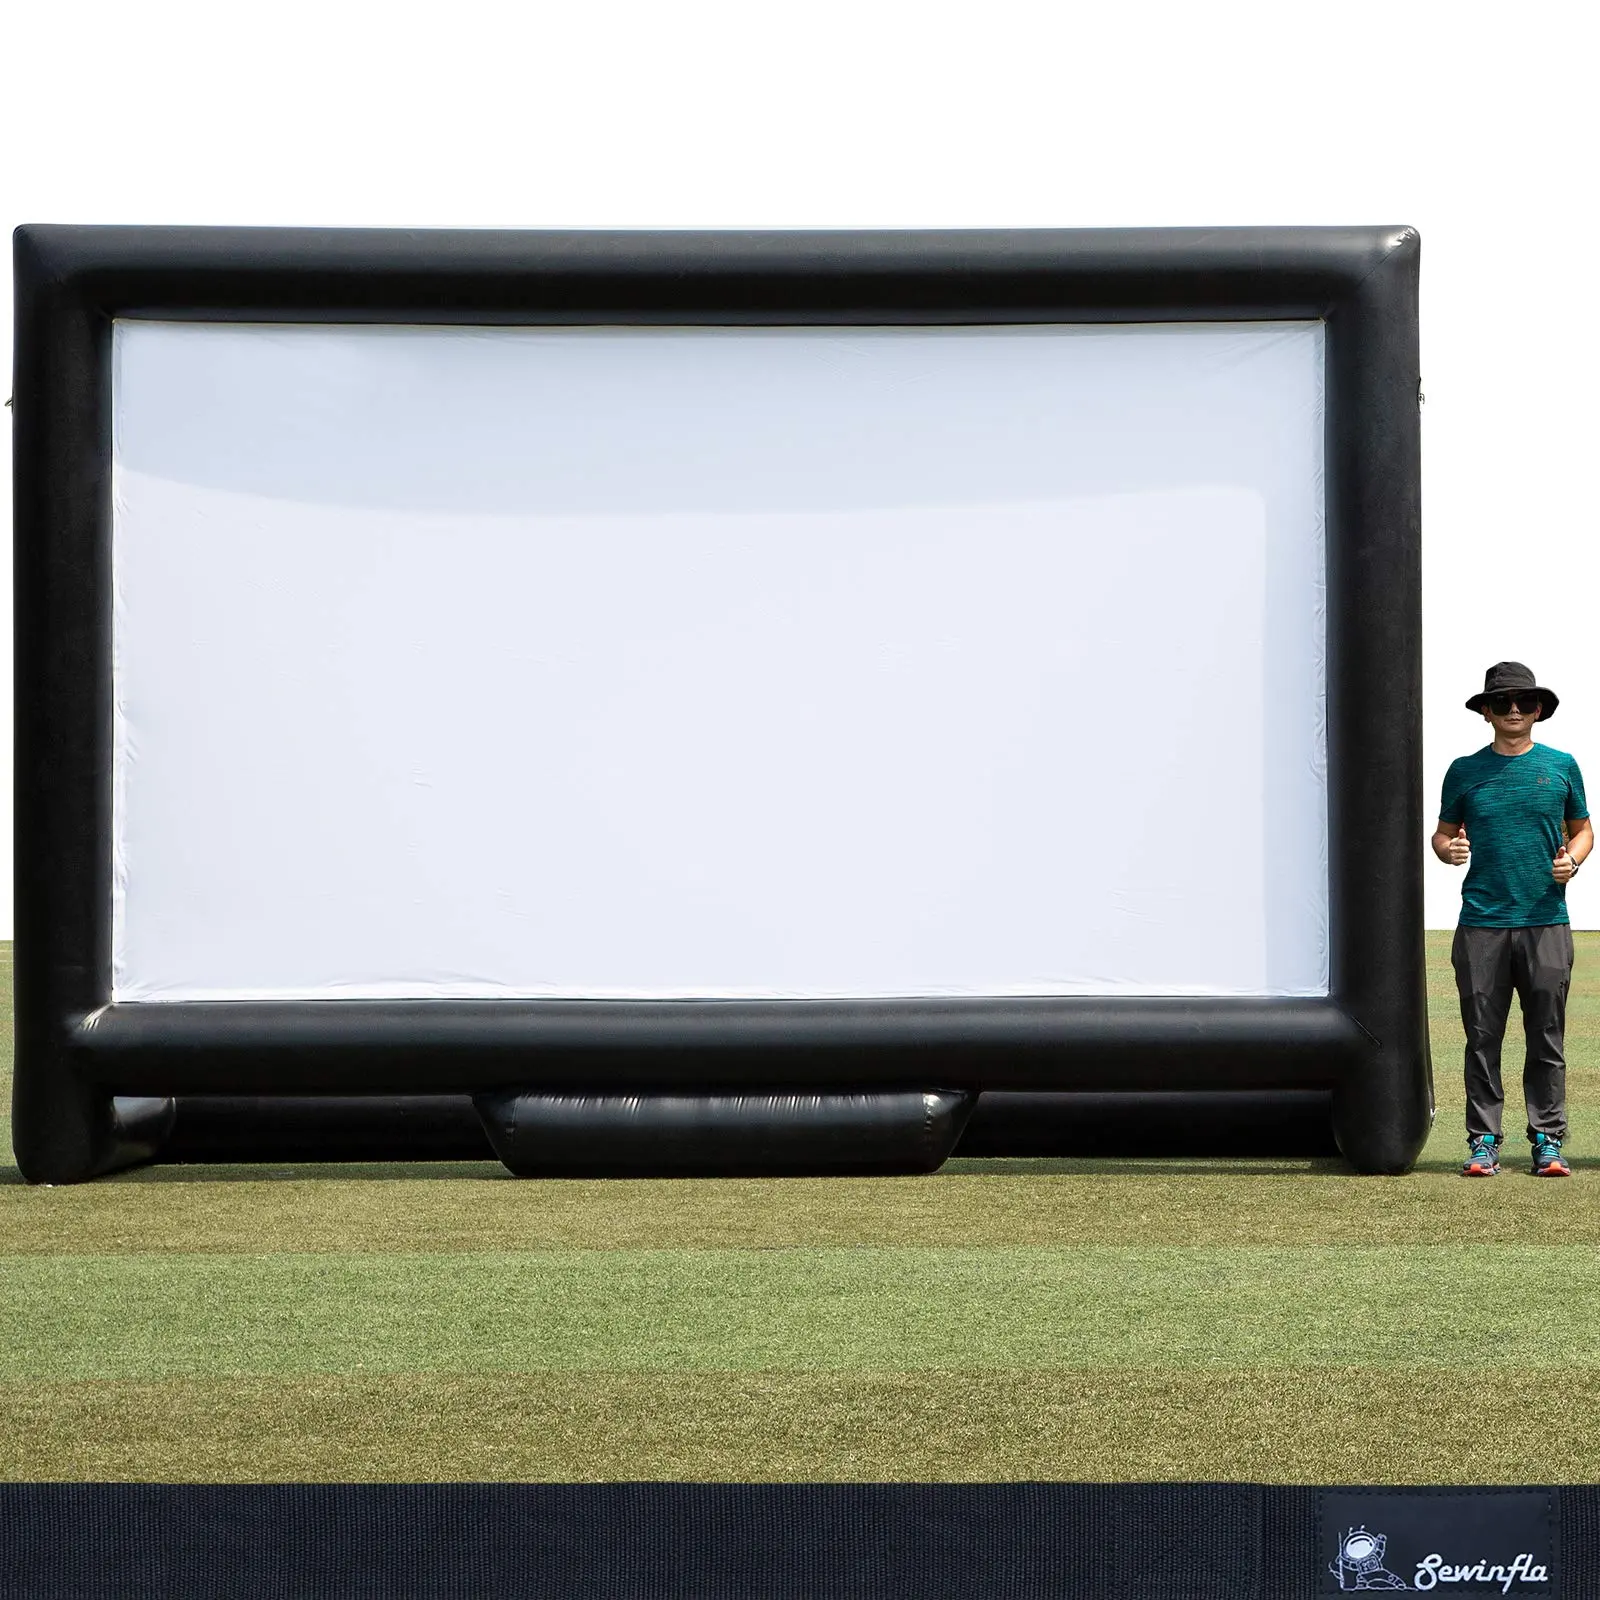 Sewinfla 19ft-герметичный, Усовершенствованный дизайн, надувной экран для фильма-не нужно продолжать надувать-поддерживает переднюю и заднюю проекцию